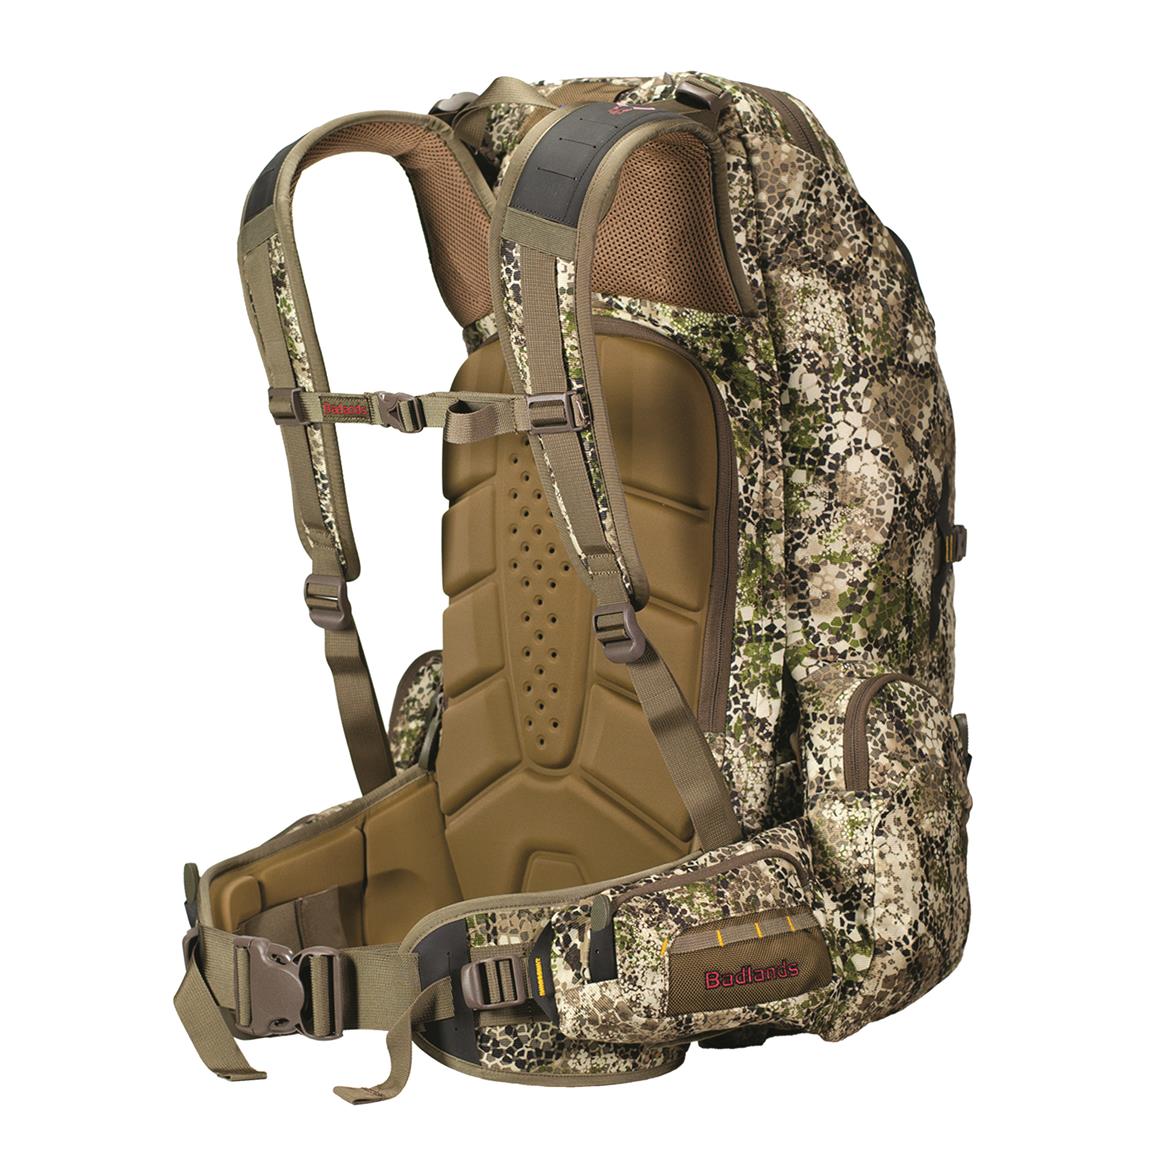 Badlands 2200 Hunting Backpack - 678853, Hunting Backpacks at Sportsman ...